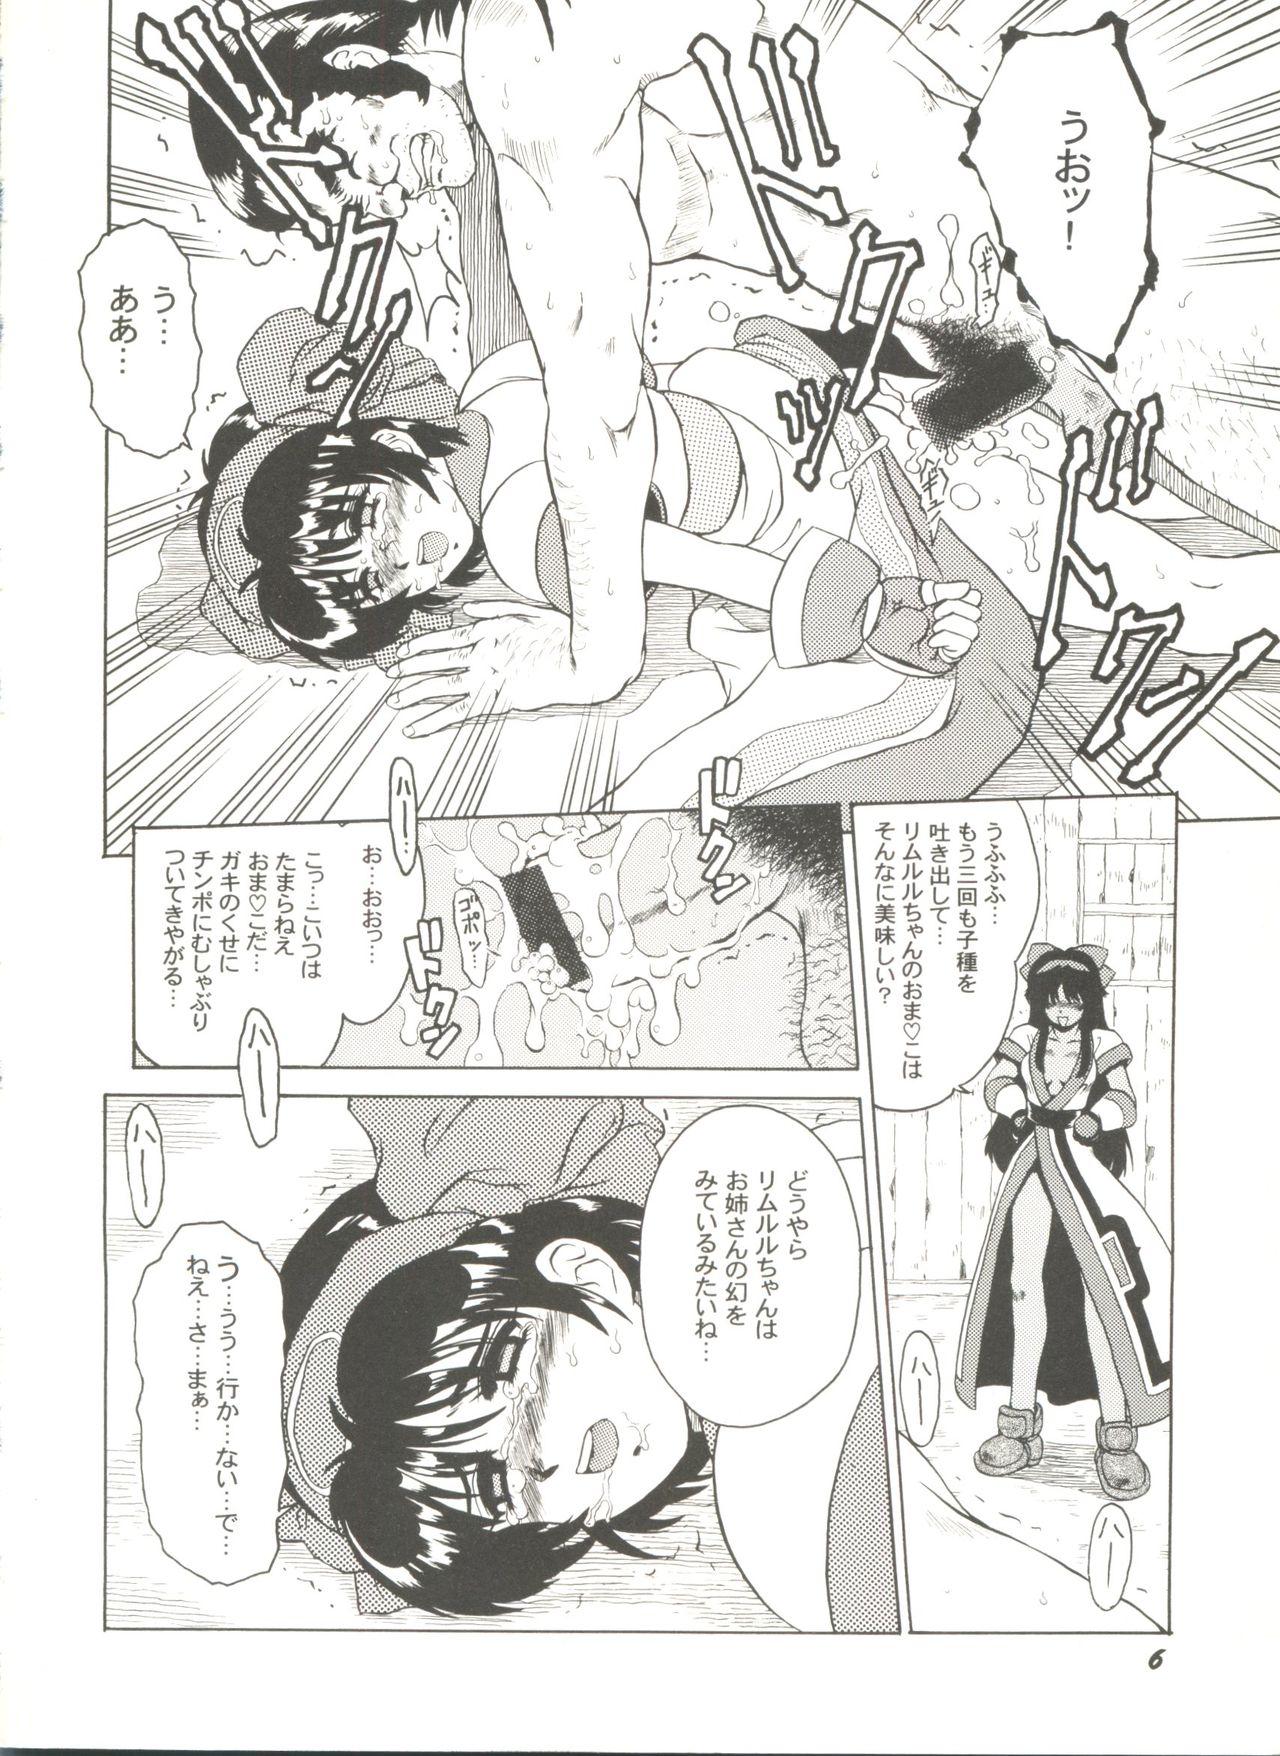 Novinhas Doujin Anthology Bishoujo Gumi 8 - Samurai spirits Sakura taisen Battle athletes Tanga - Page 10